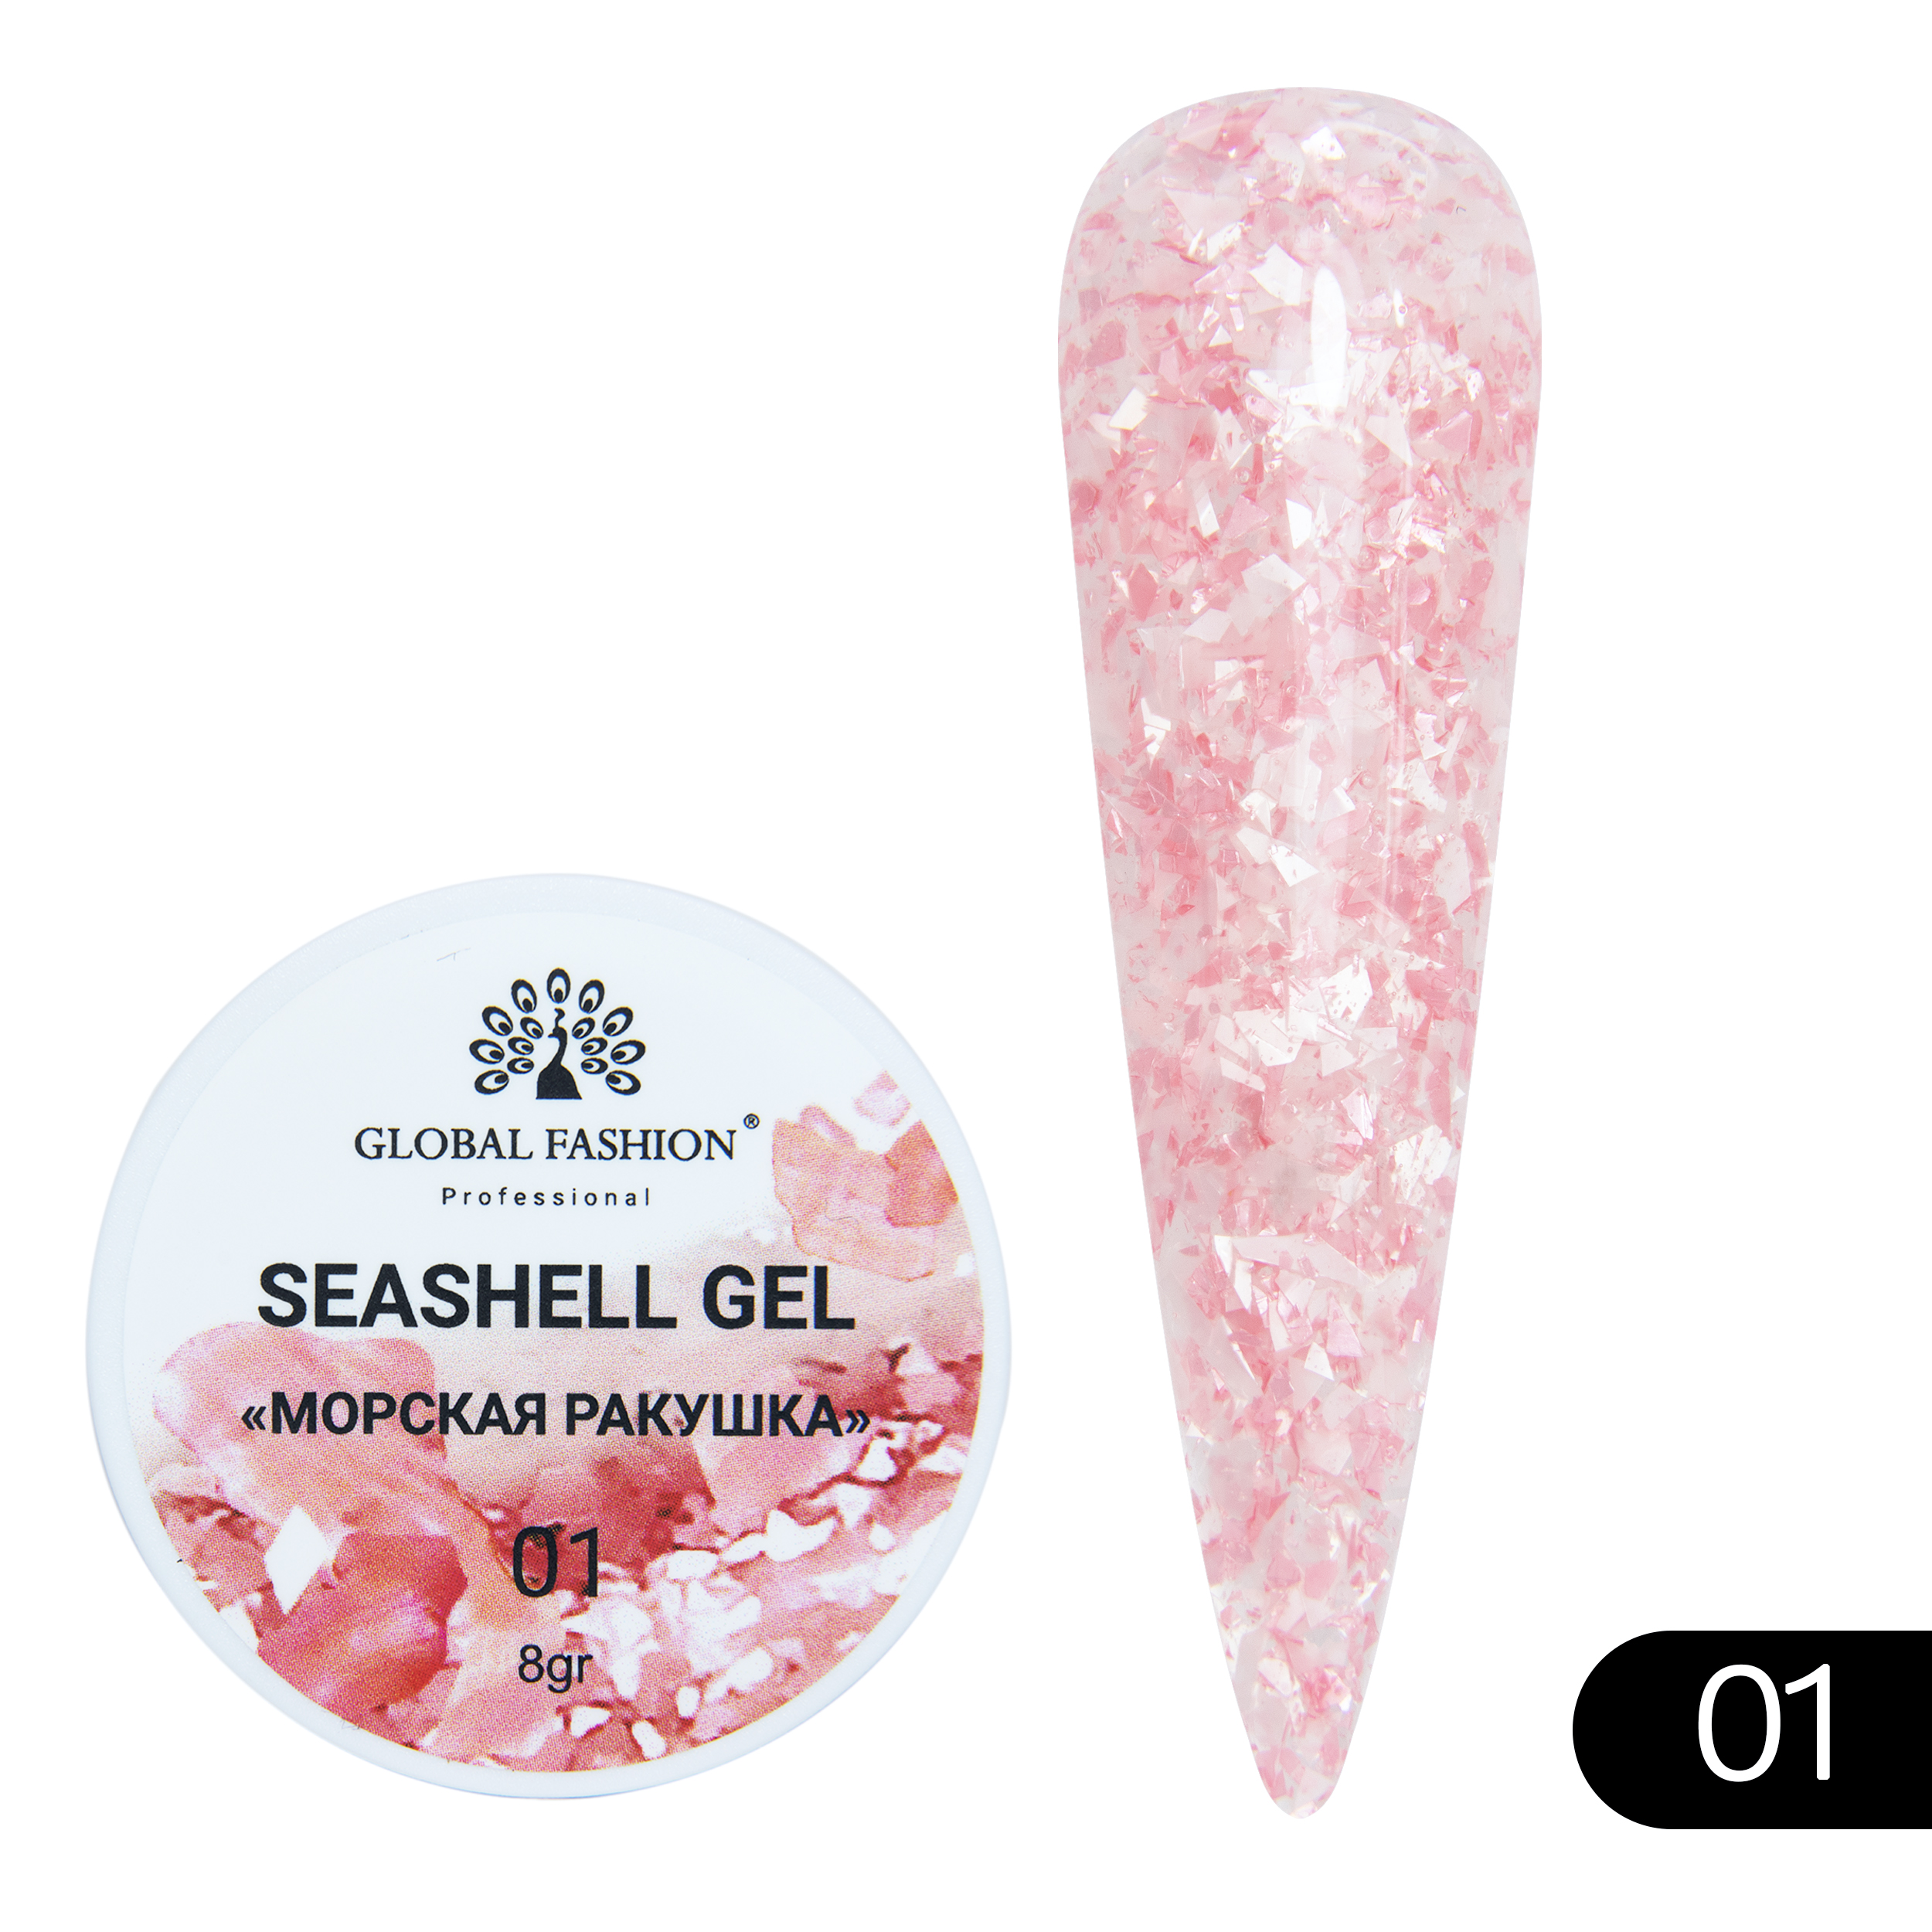 Гель-краска для ногтей Global Fashion Seashell Gel с мраморным эффектом ракушки №01 5 г макароны makfa ракушки 450г